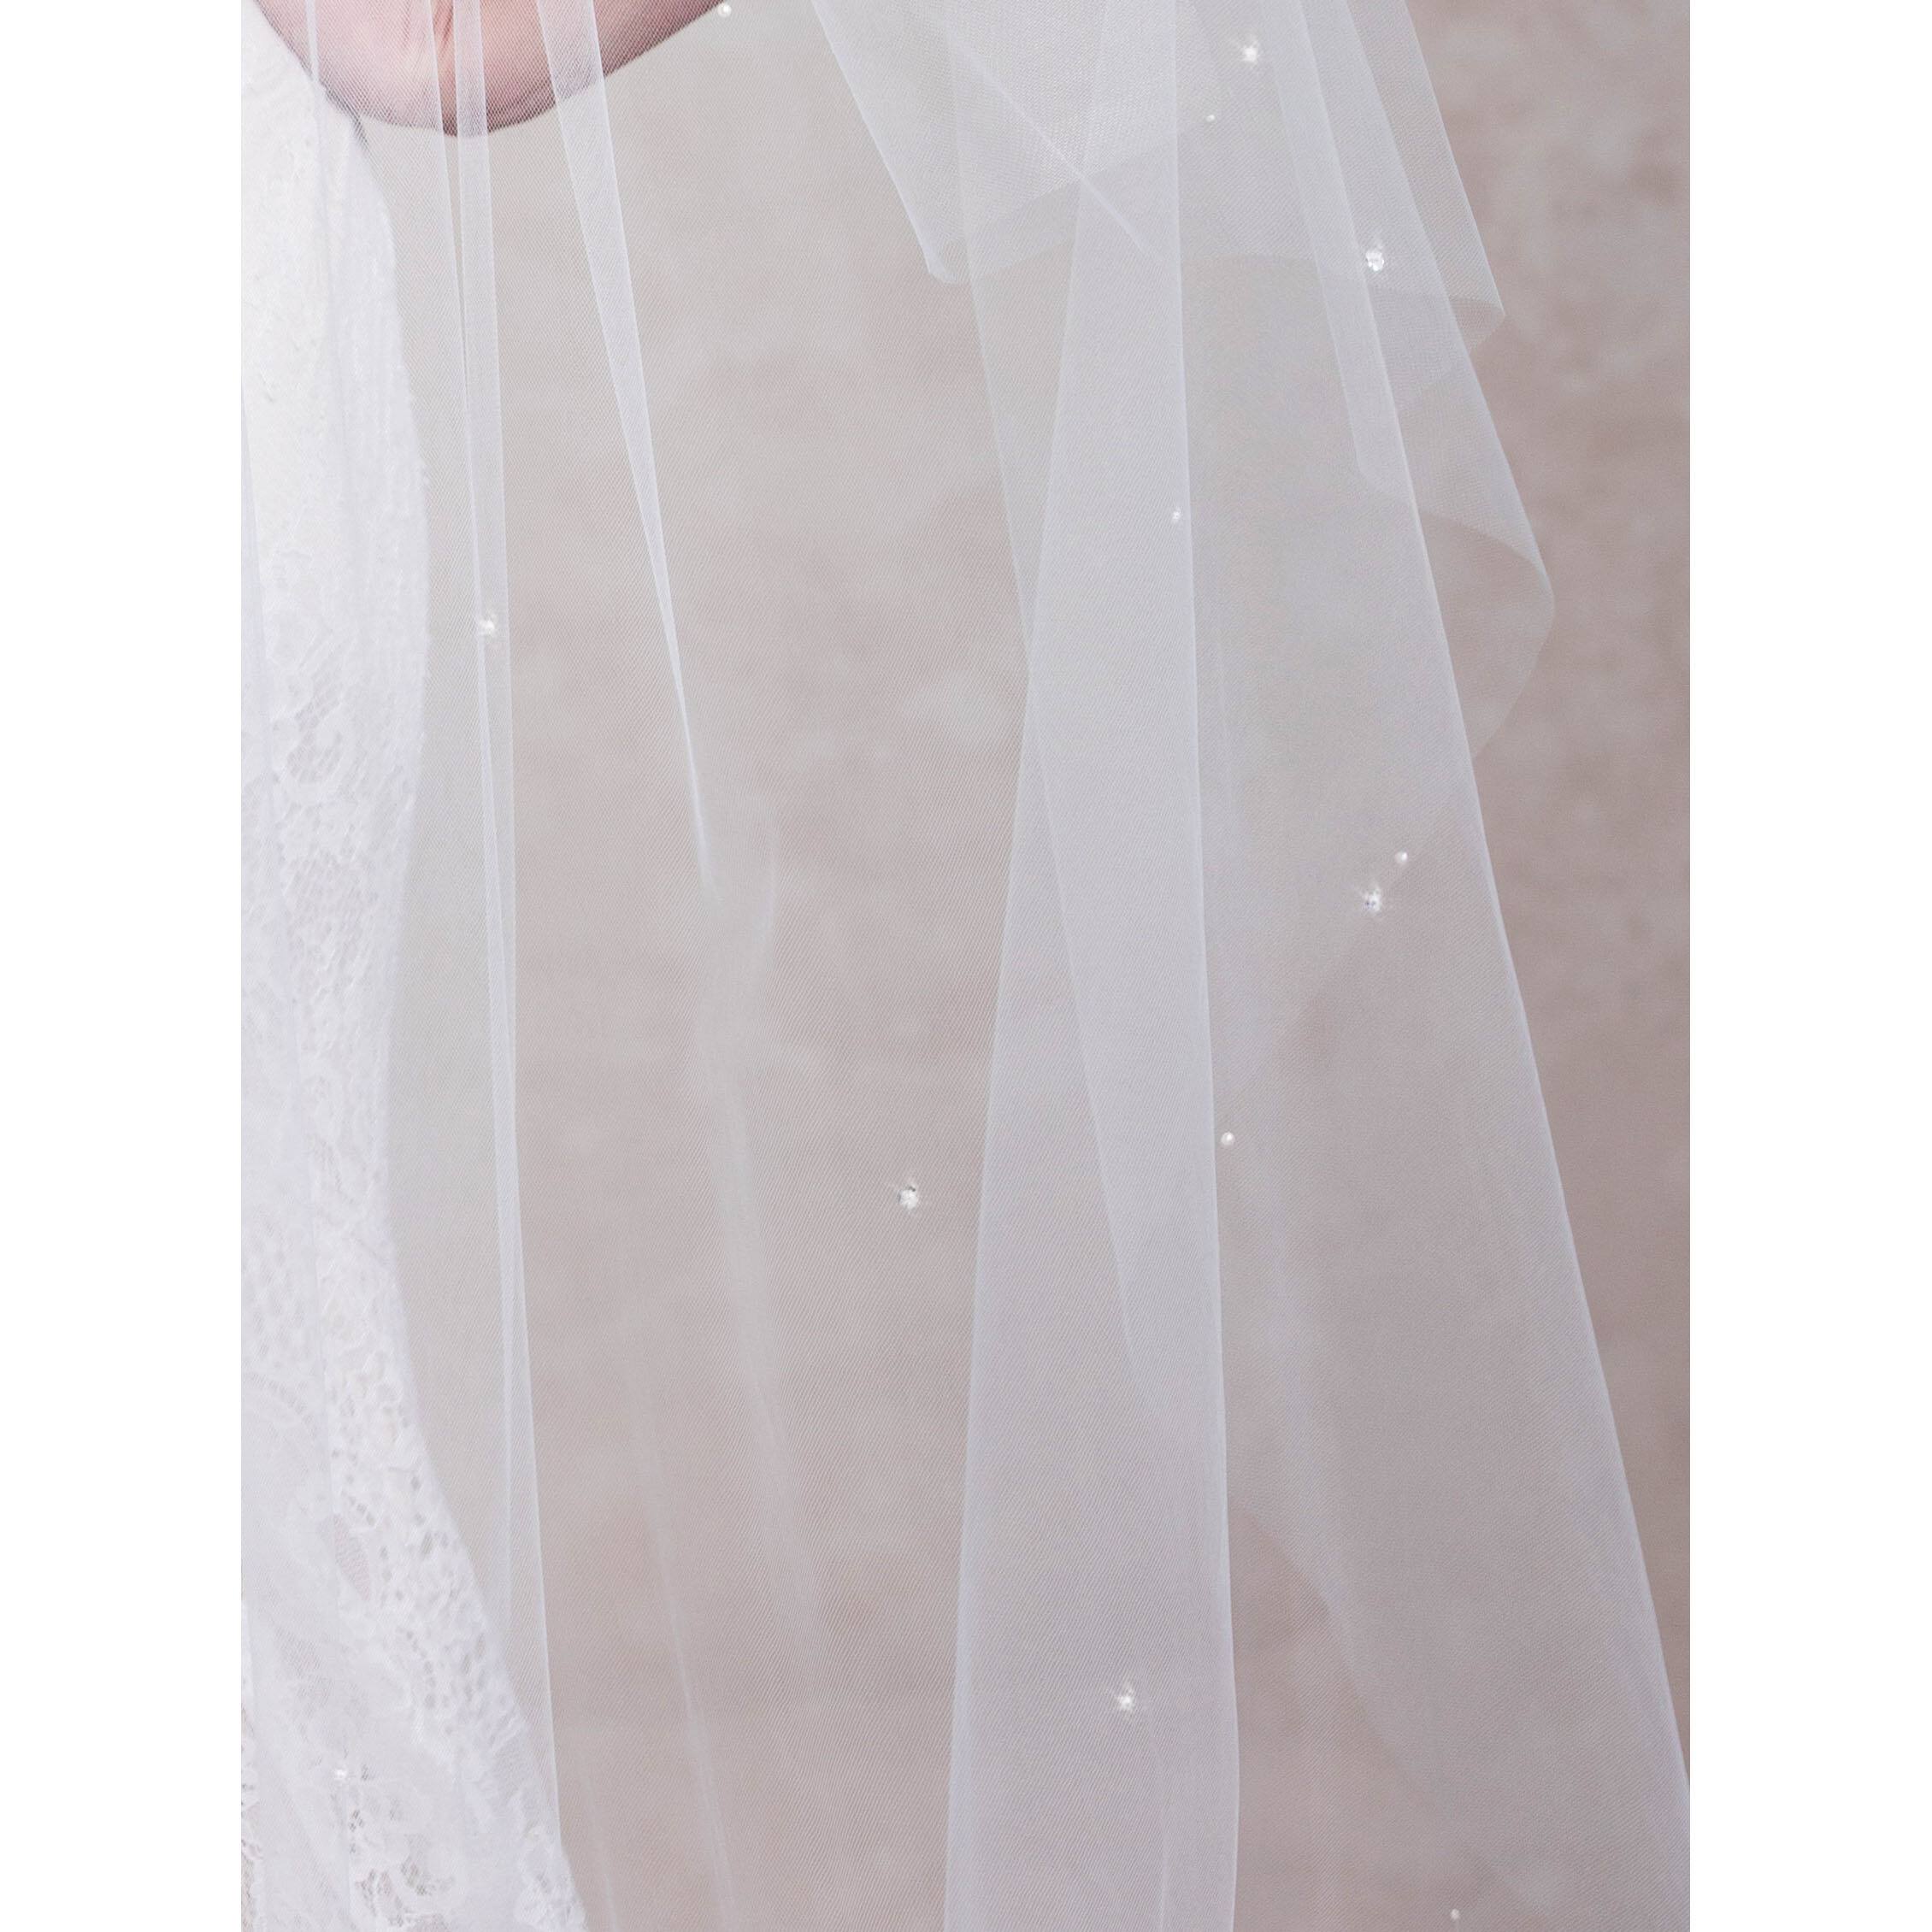 Illuminate Wedding Veil | Ariel Taub Luxury Bridal Accessories — ARIEL TAUB